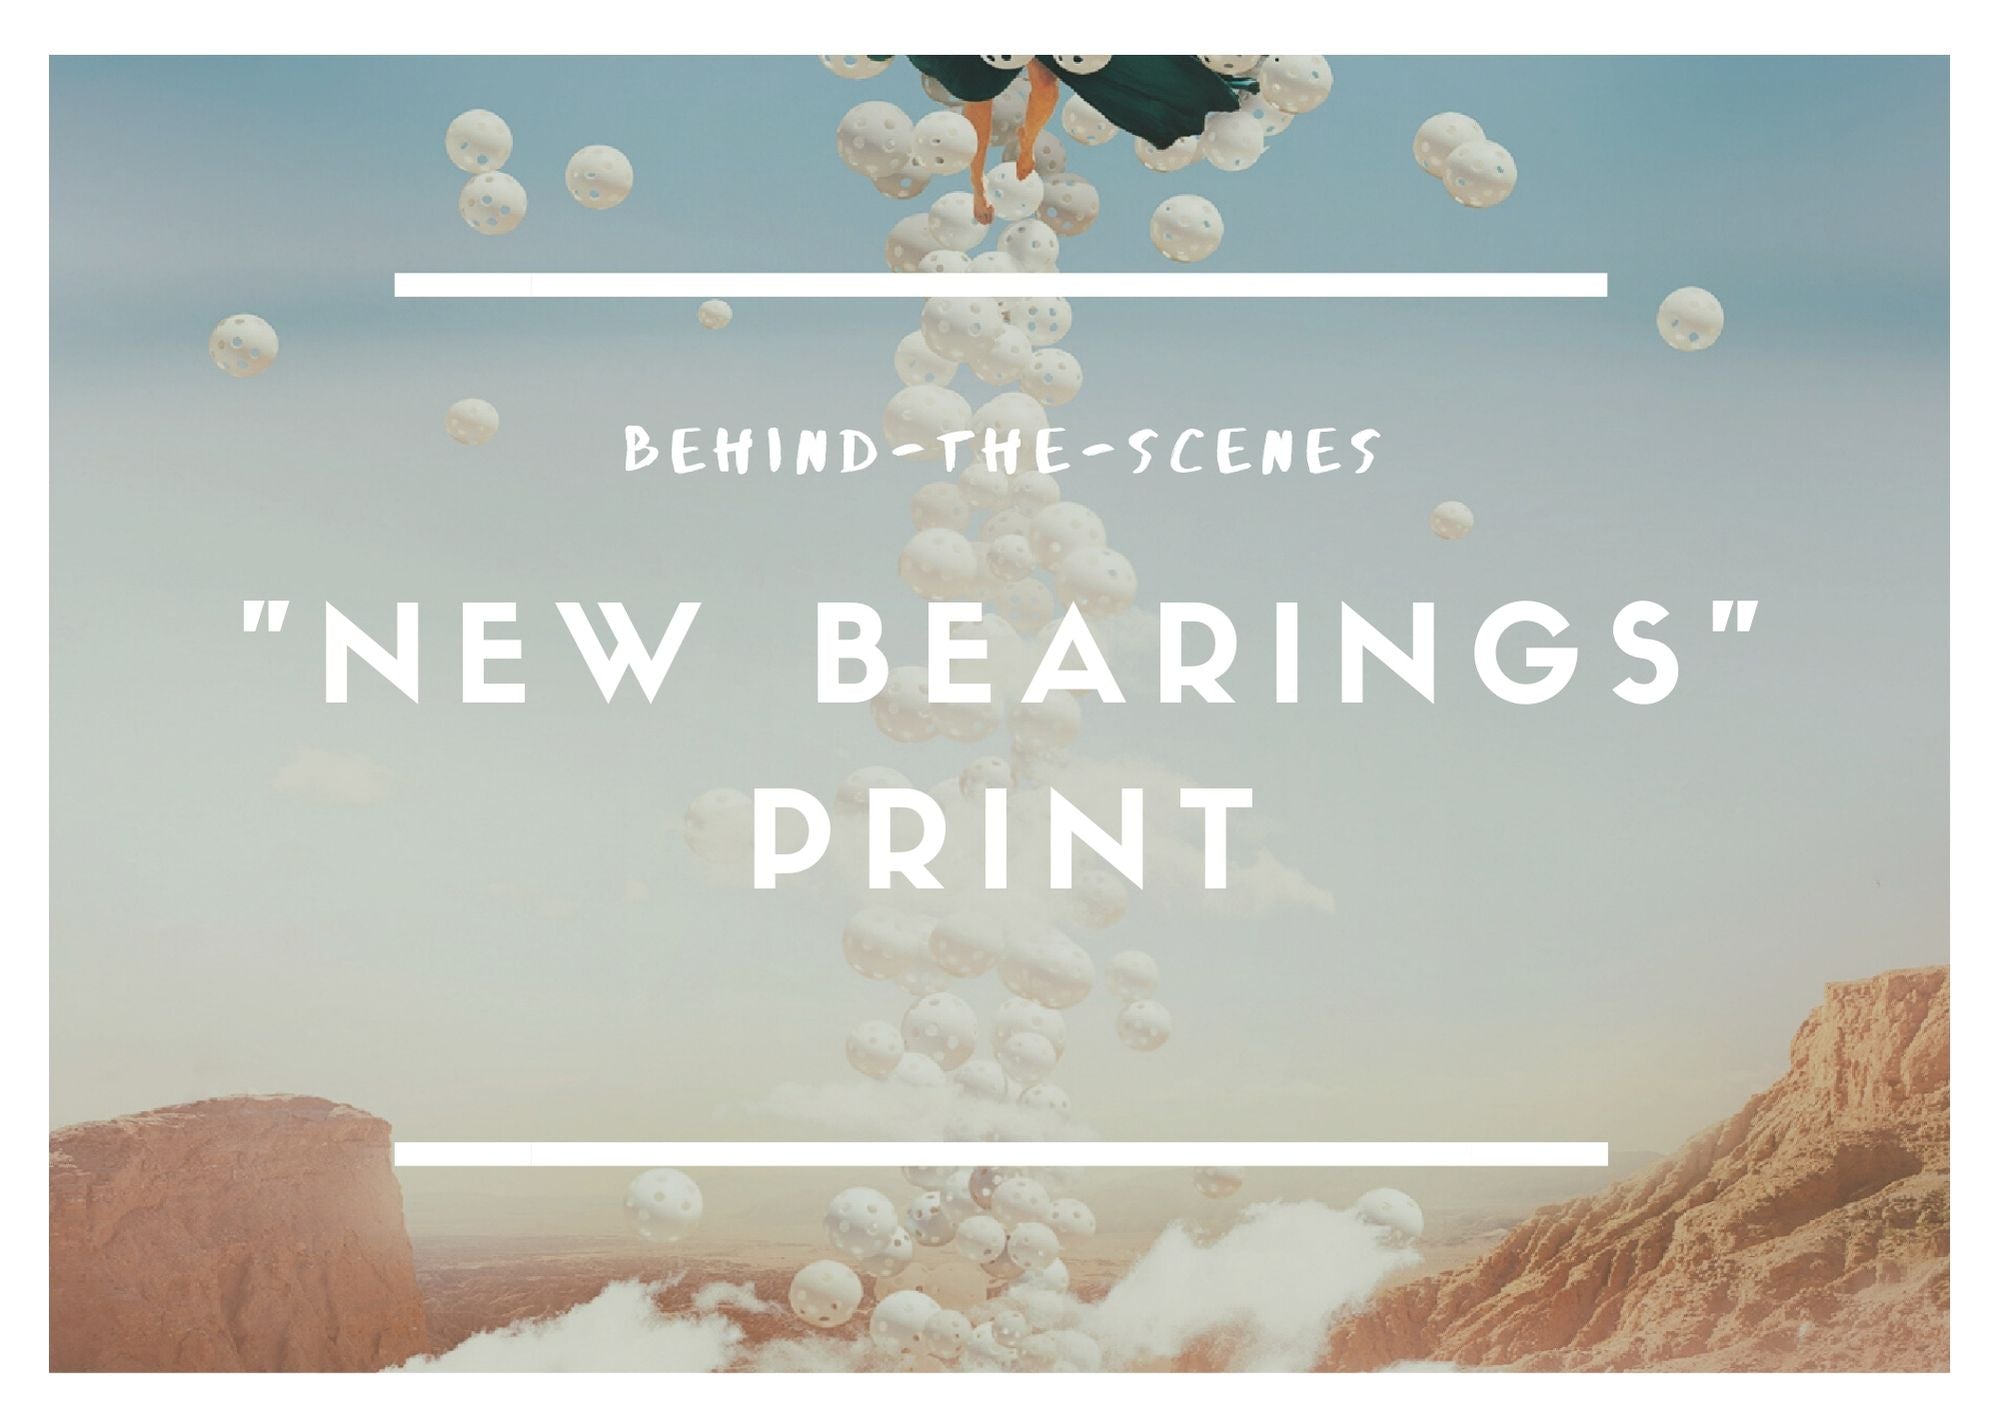 Behind-the-scenes "New Bearings"